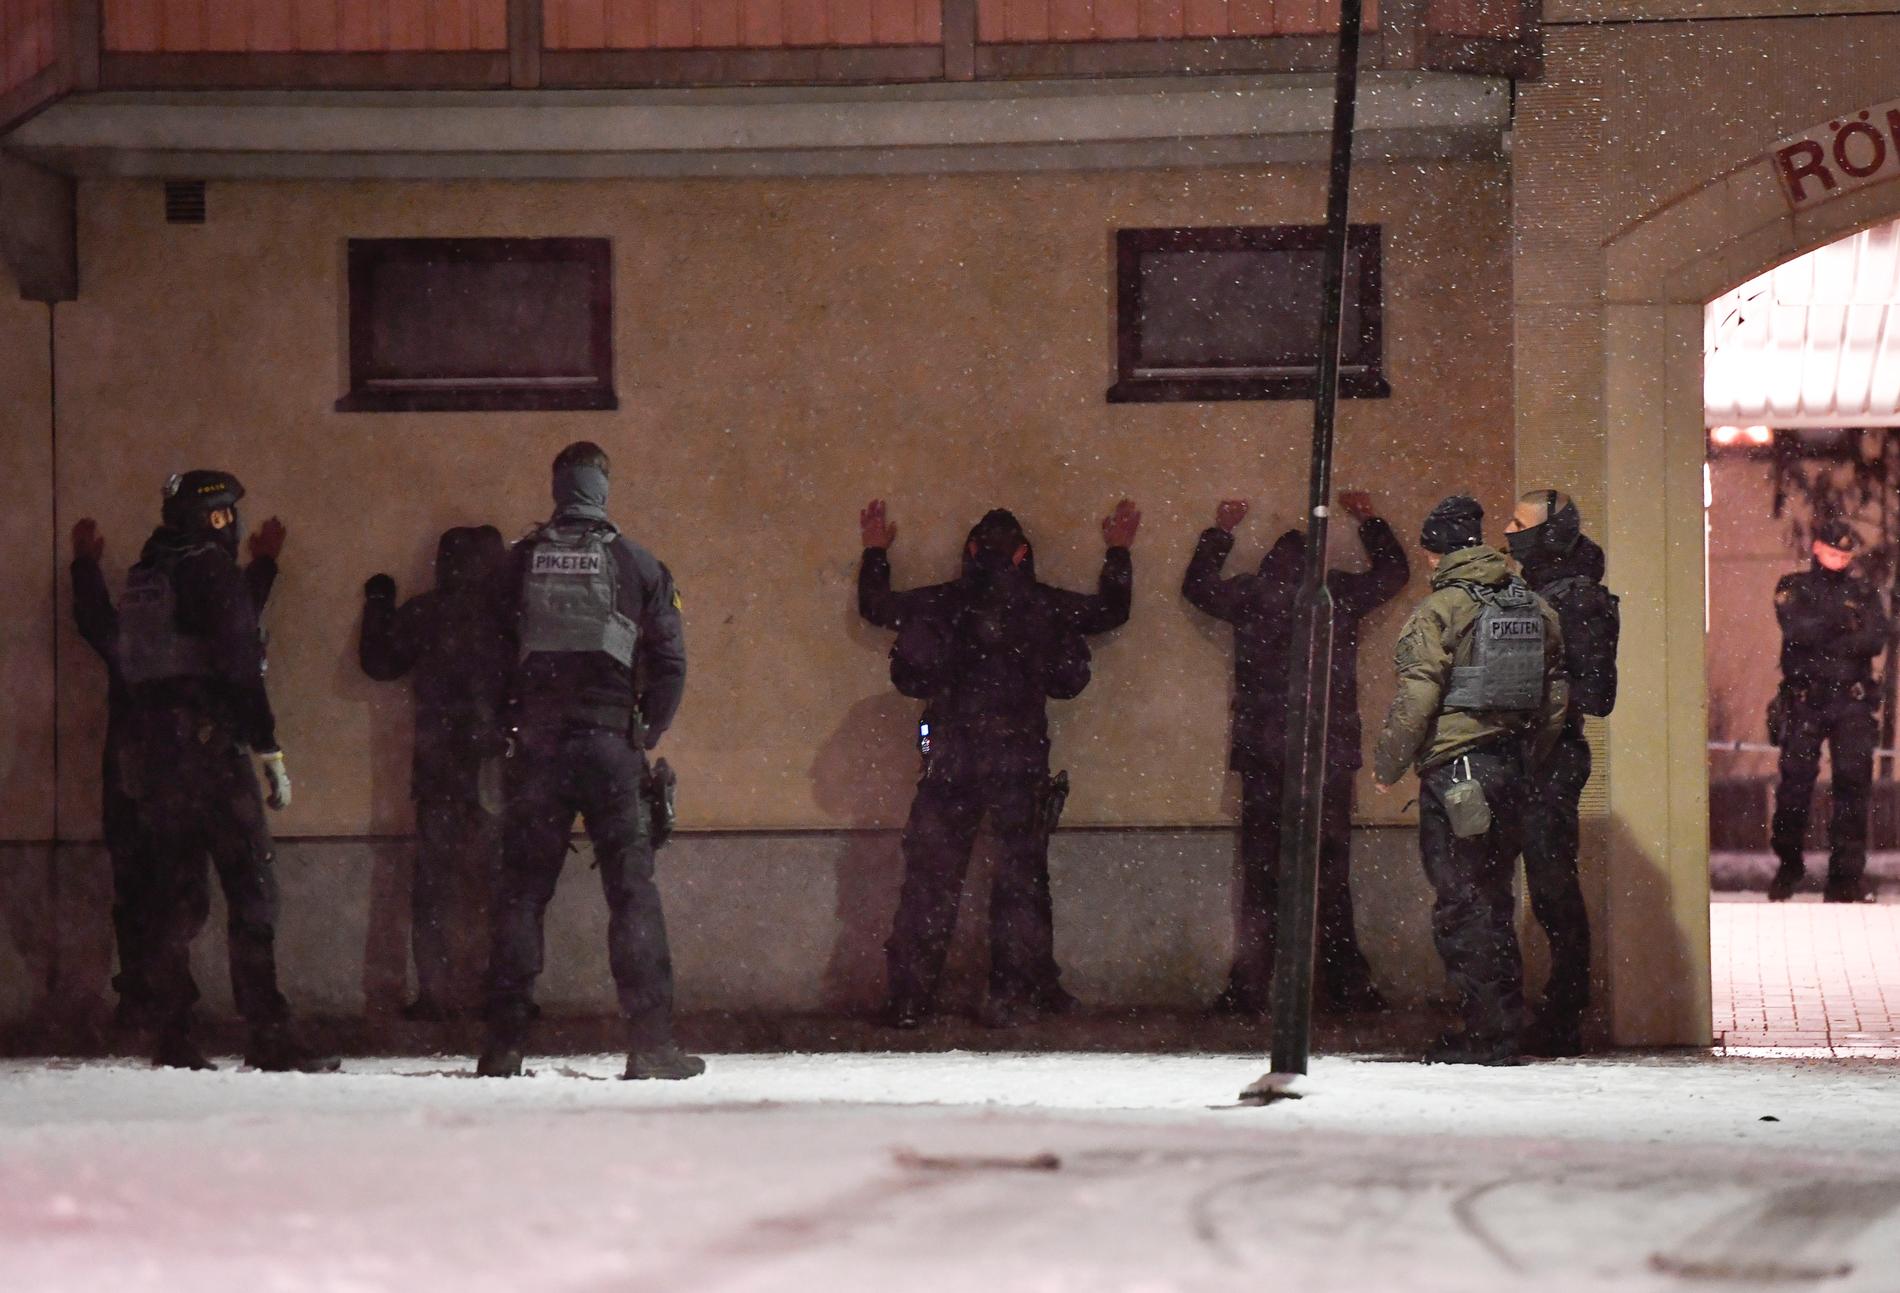 En man sköts till döds i ett flerfamiljshus i Enskede i södra Stockholm. Nu begärs en man häktad, misstänkt för mord. Bilden är tagen i närheten av brottsplatsen, strax efter händelsen.